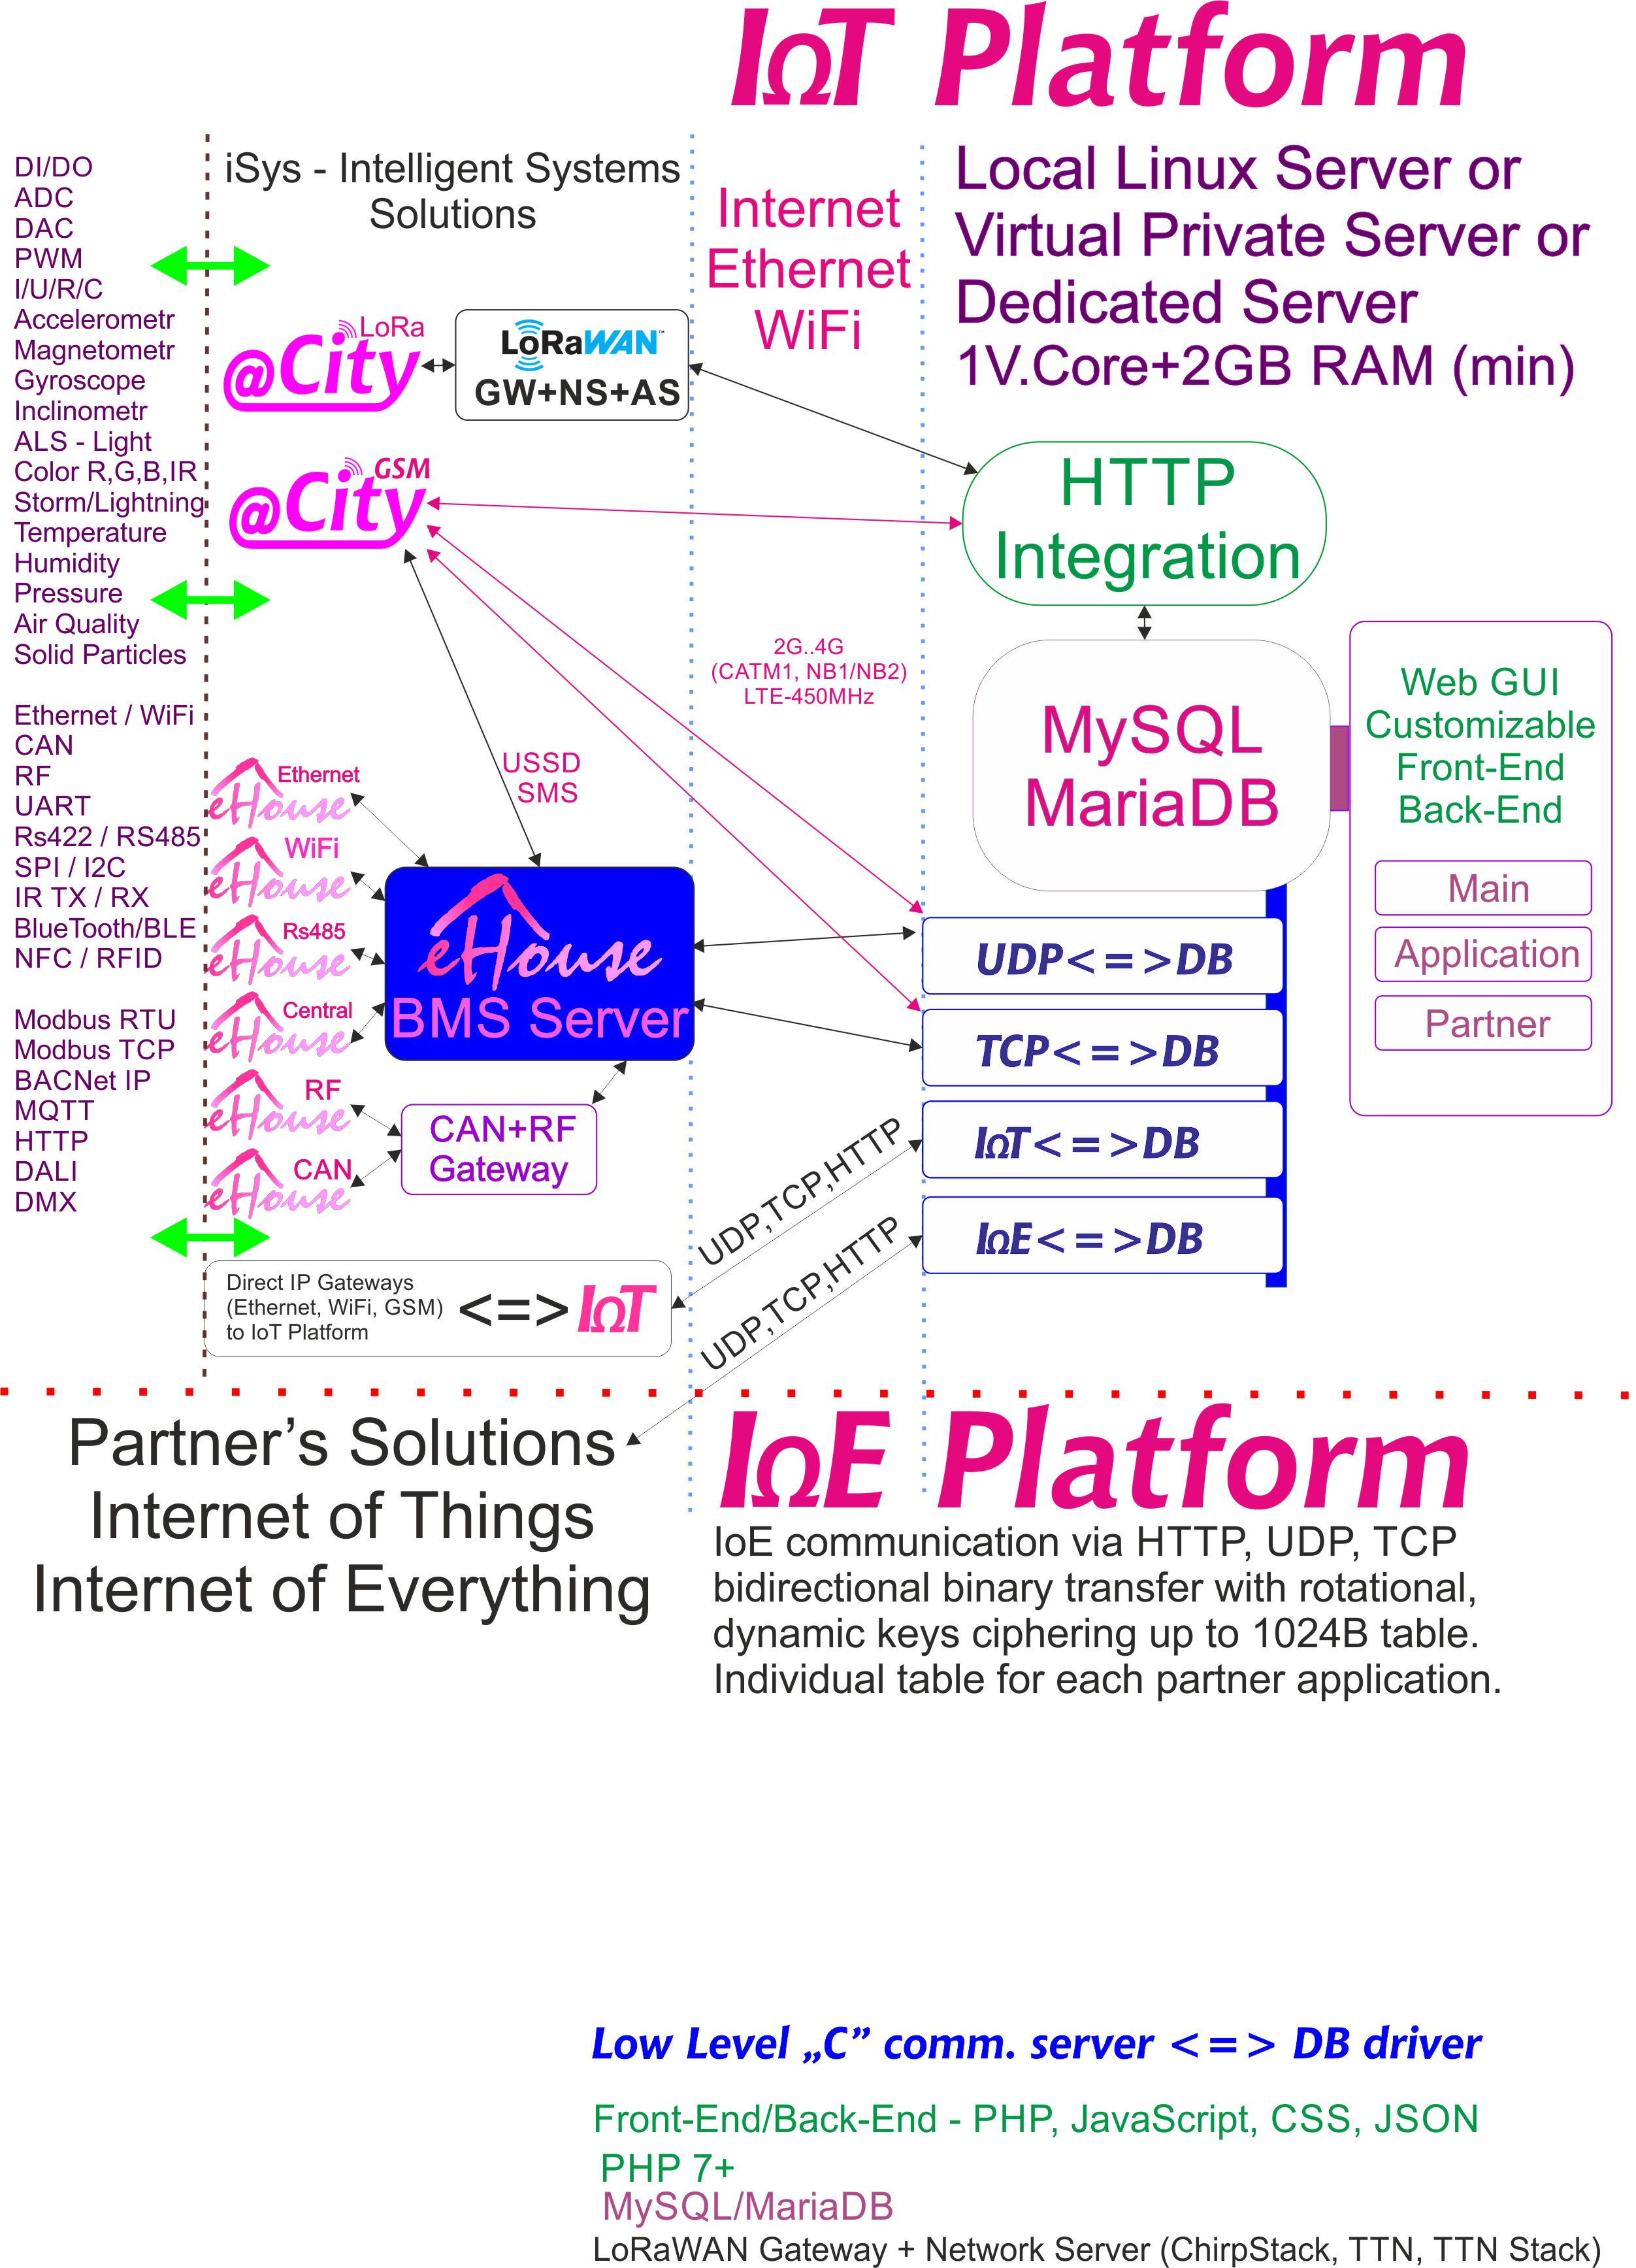 IoE, платформа IoT, предназначенная для каждого партнера с индивидуальным шифрованием